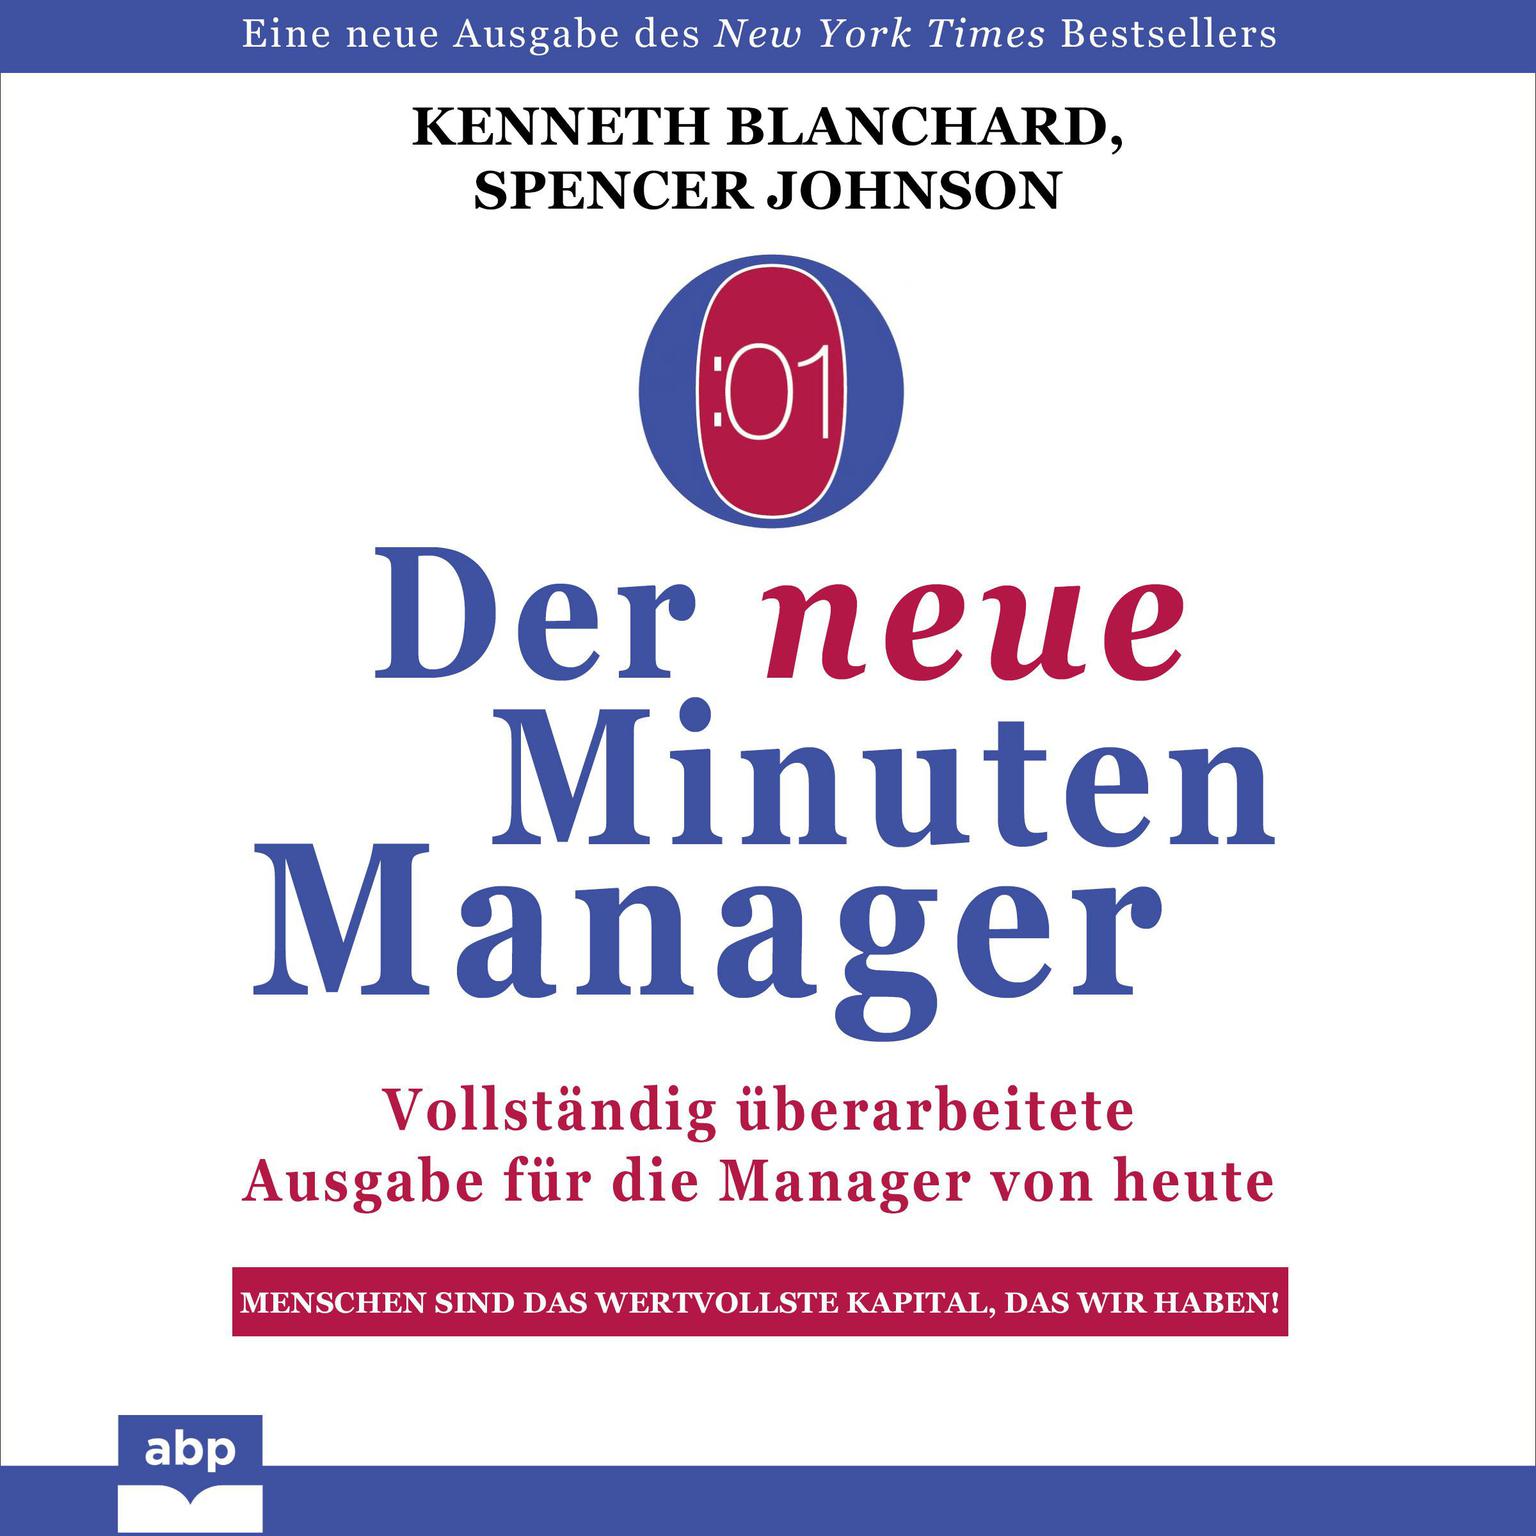 Der neue Minuten Manager Audiobook, by Ken Blanchard